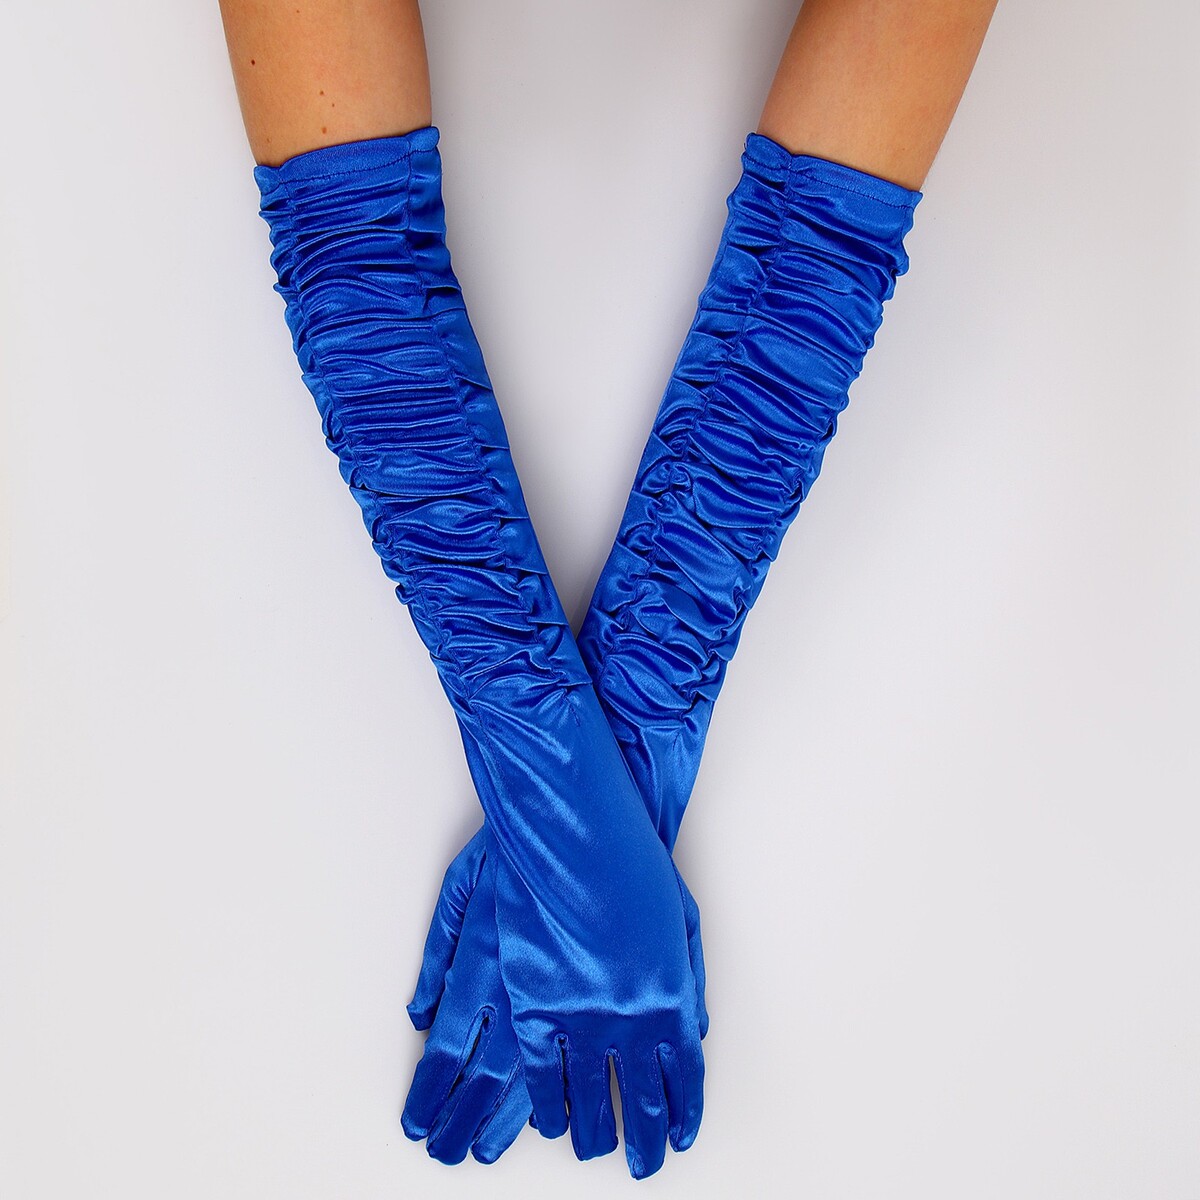 Карнавальный аксессуар - перчатки со сборкой, цвет синий карнавальный колпак клоун на резинке поролон синий